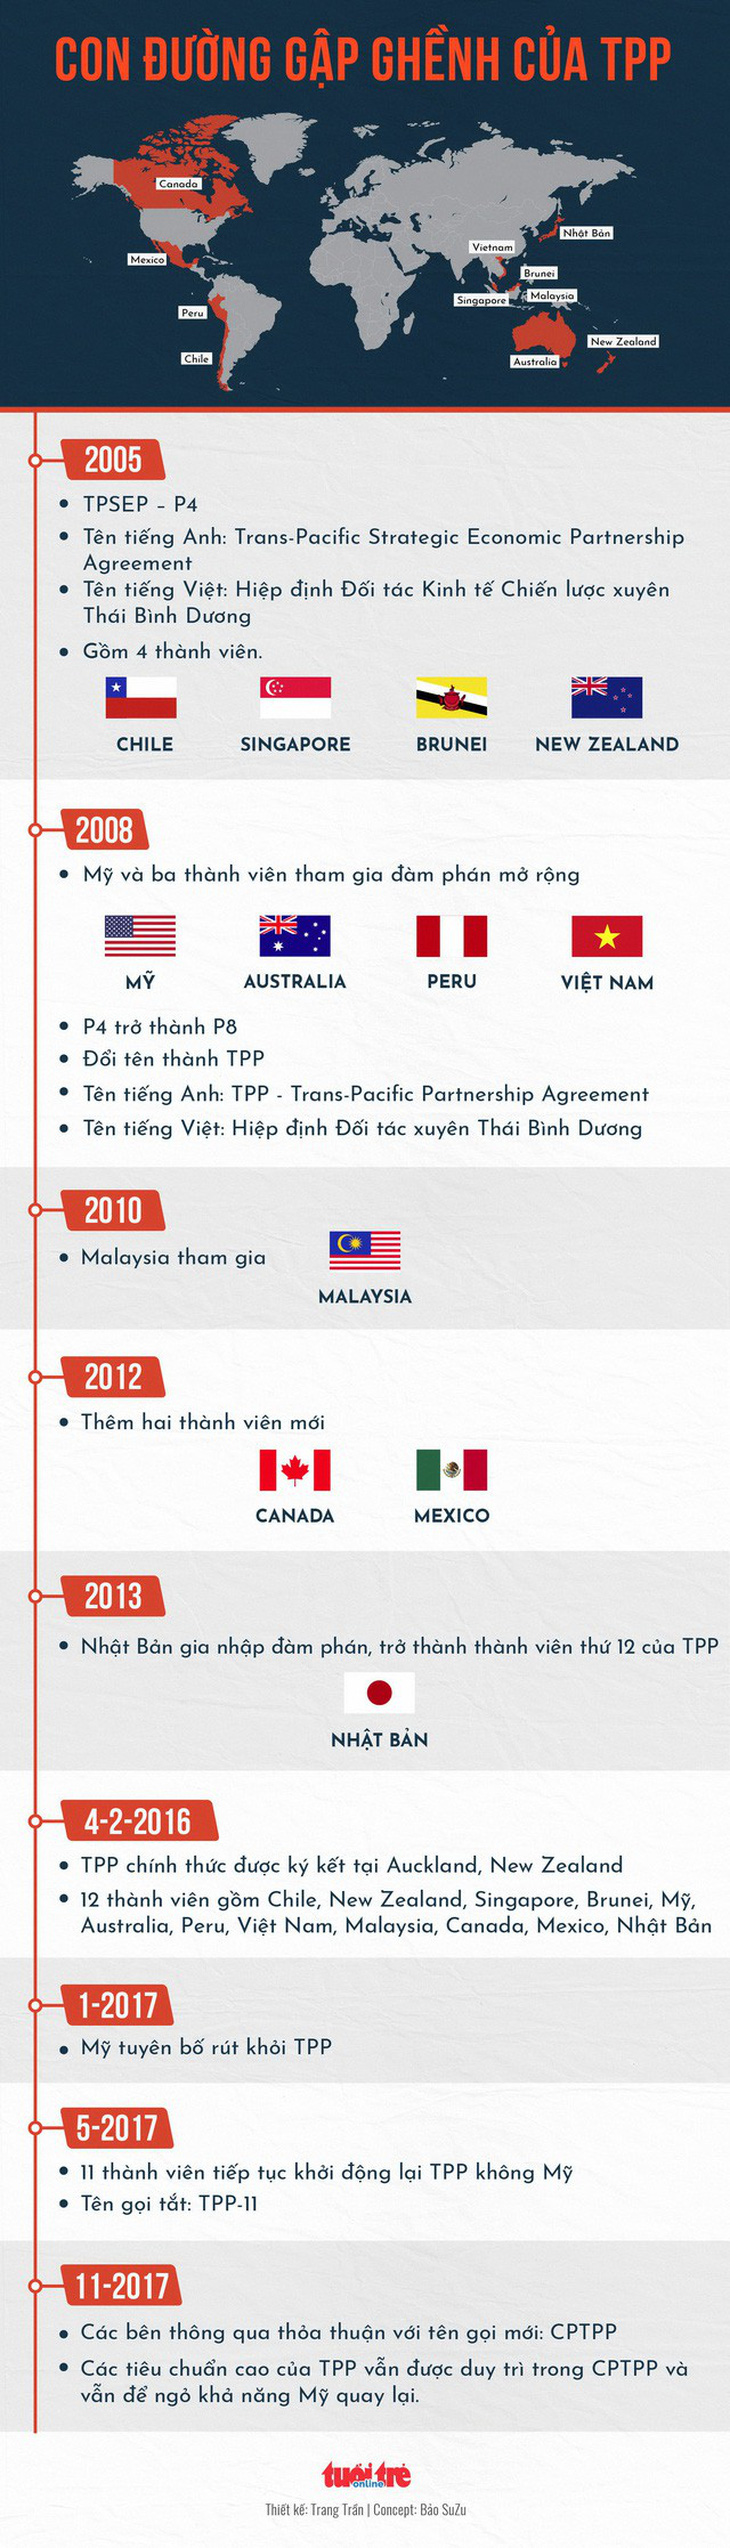 Hiệp định thay thế TPP đã được ký kết - Ảnh 3.